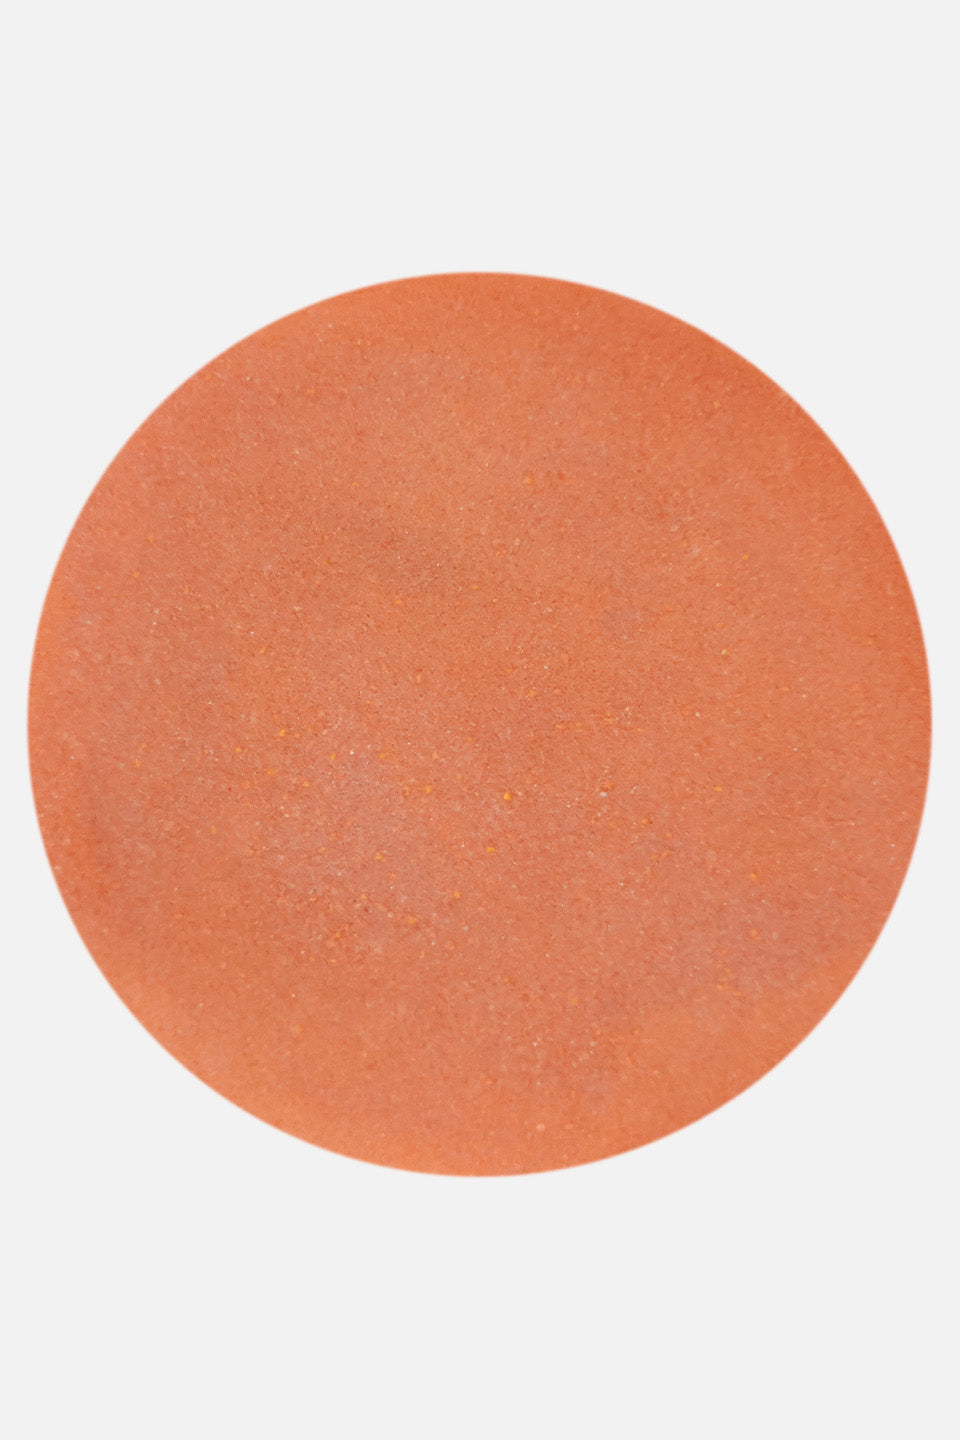 Polvere acrilica arancione mandarino 5 g